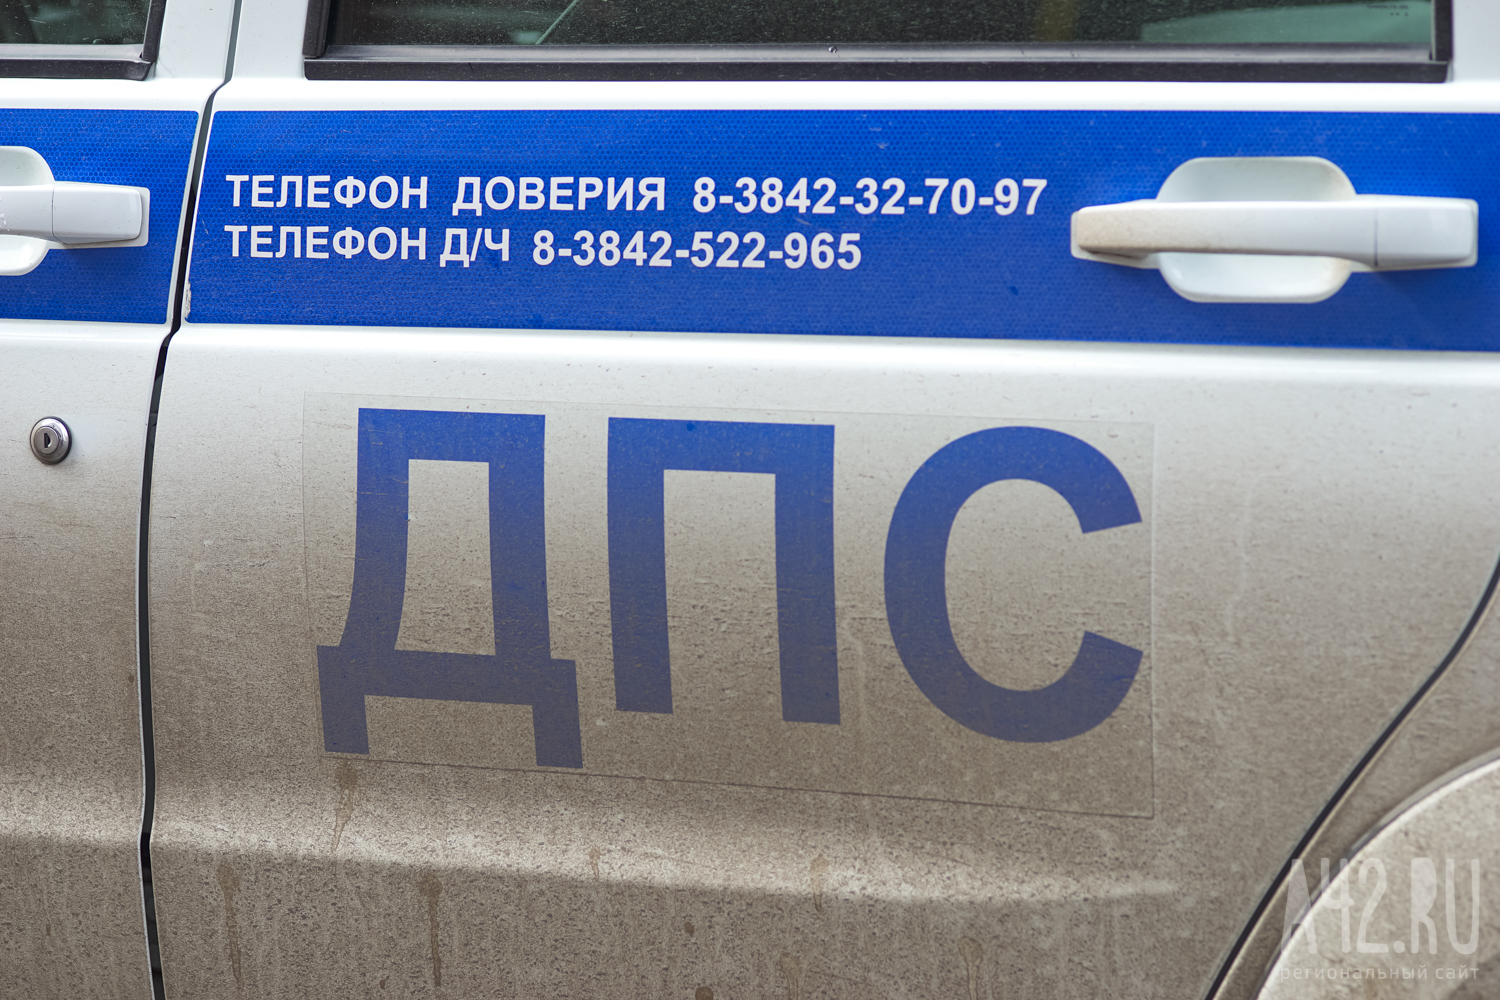 Перебегала дорогу: в ГИБДД сообщили подробности ДТП со сбитой 10-летней девочкой в Кузбассе